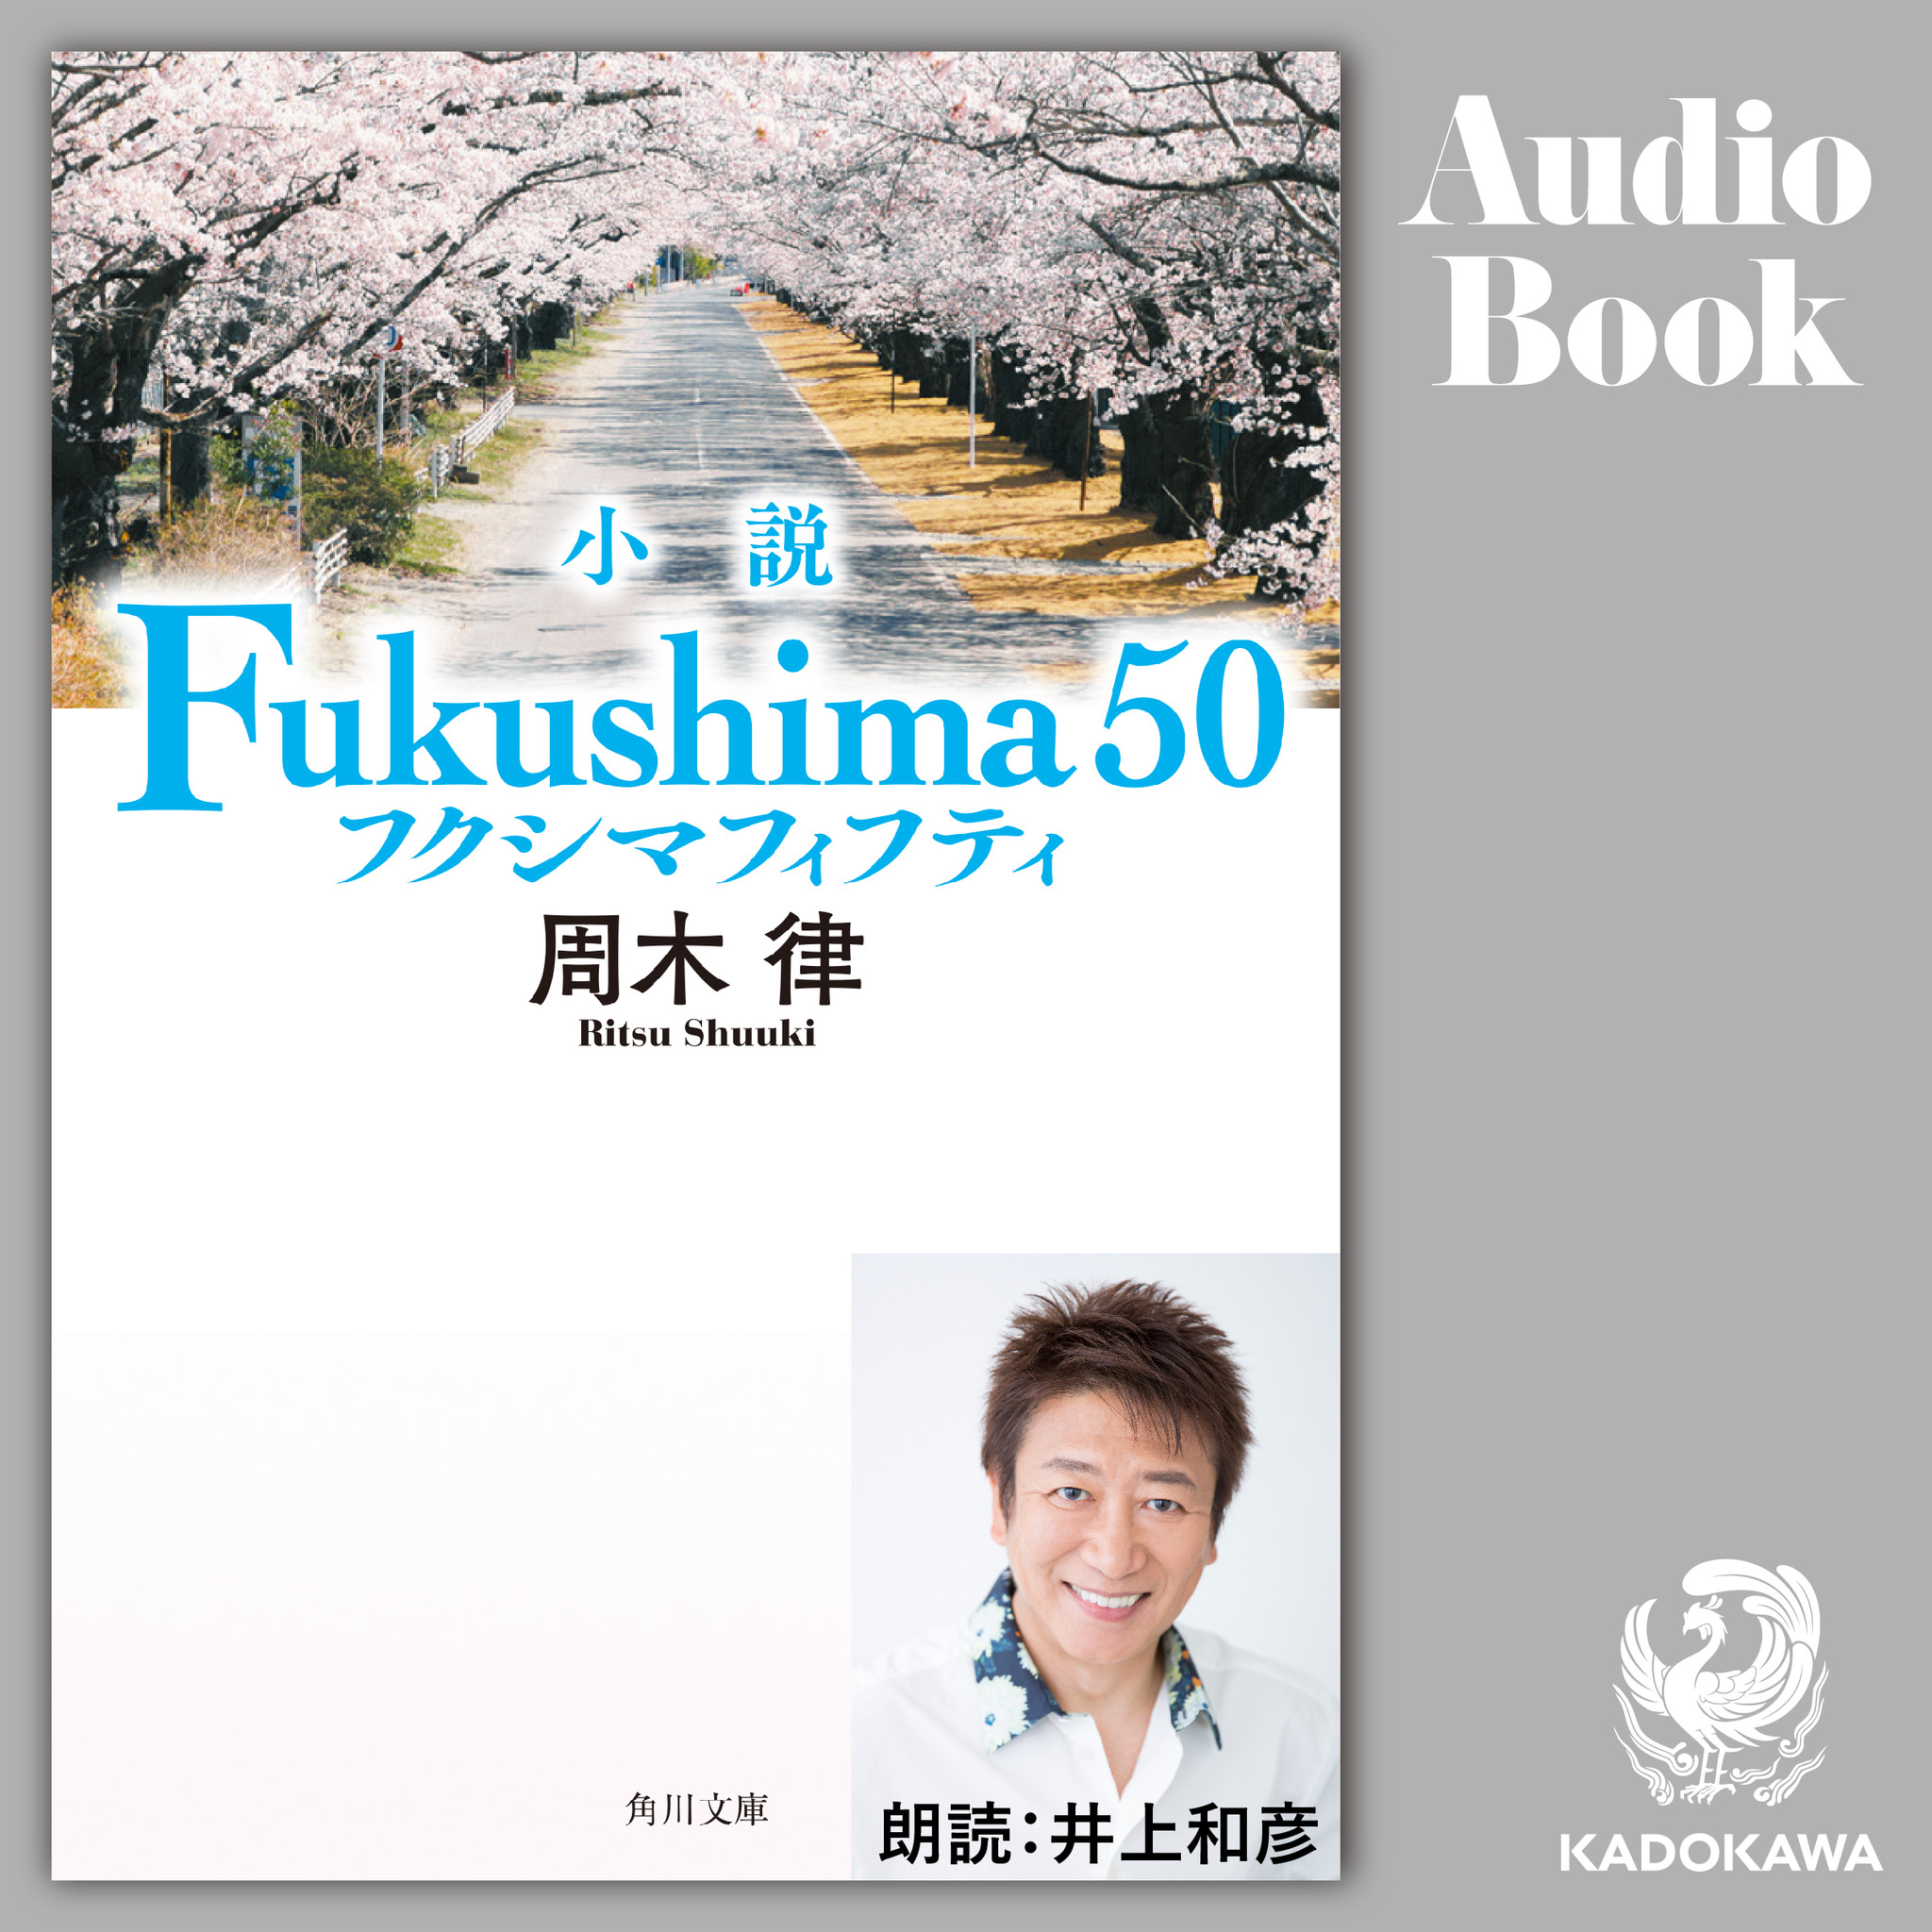 声優 井上和彦が朗読する 小説 Fukushima 50 が映画 公開日の年3月6日 金 より Audibleにて配信開始 サイン入り小説が当たるキャンペーンも開催 株式会社kadokawaのプレスリリース